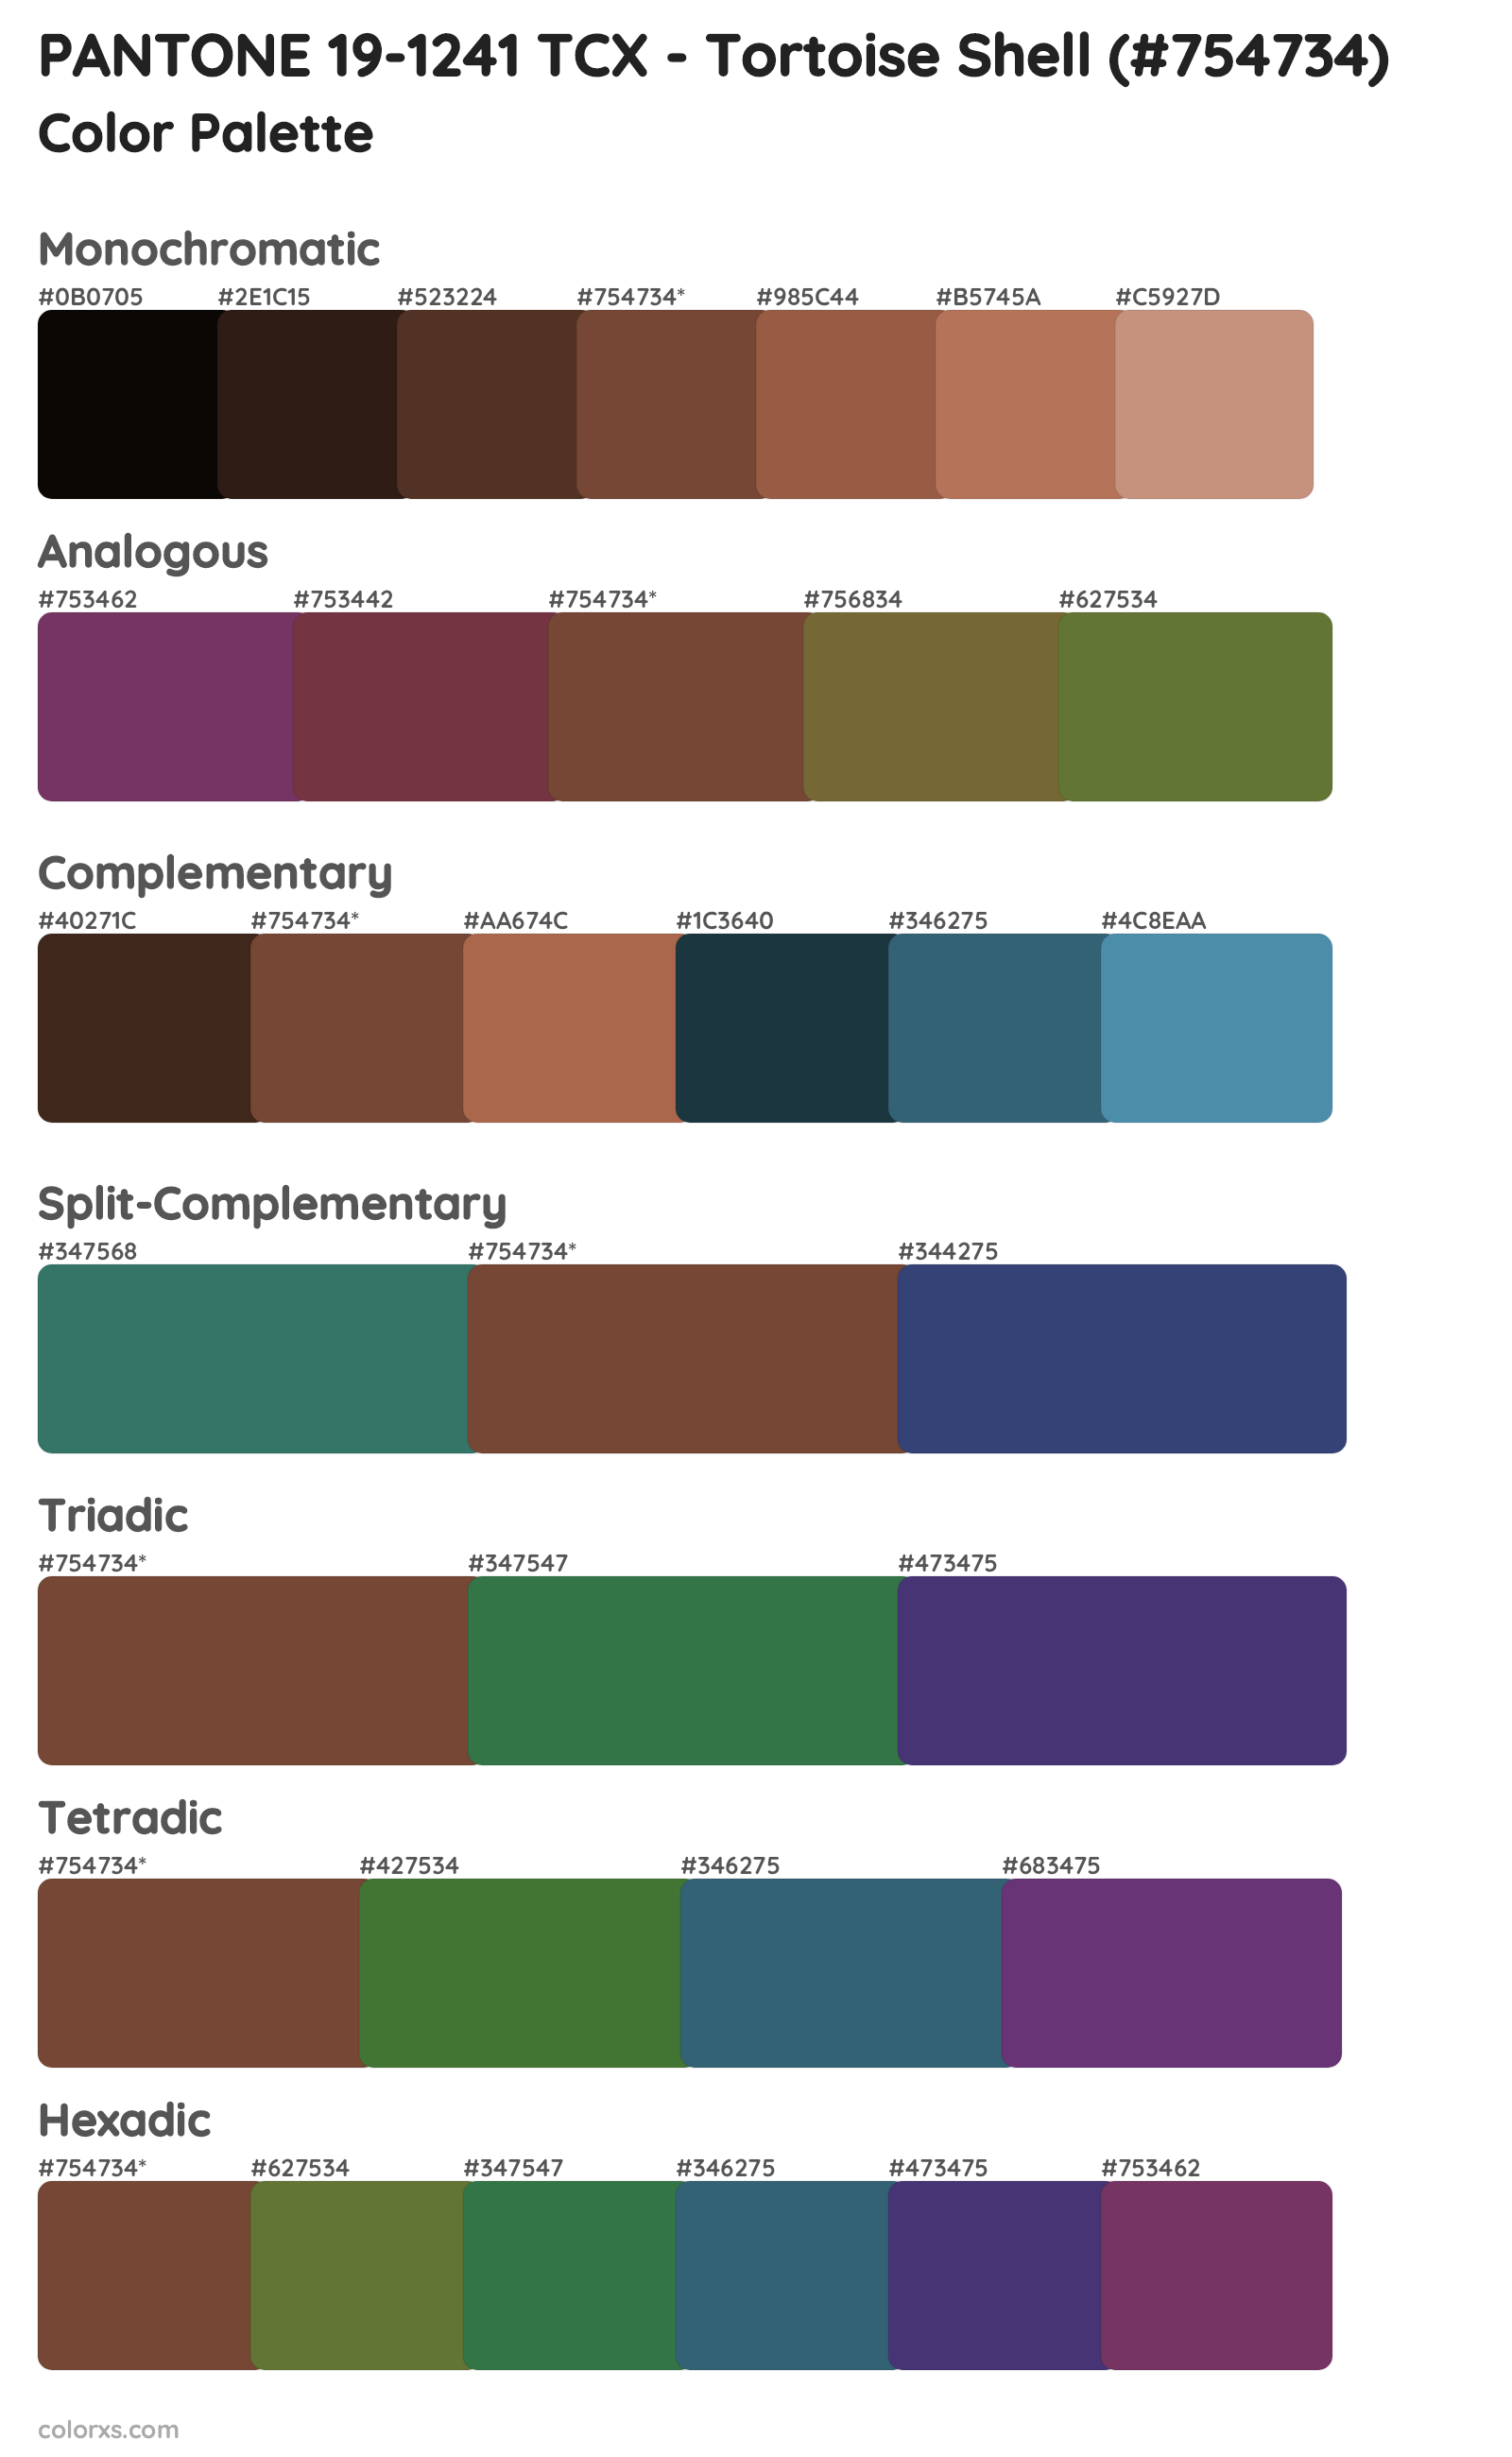 PANTONE 19-1241 TCX - Tortoise Shell Color Scheme Palettes